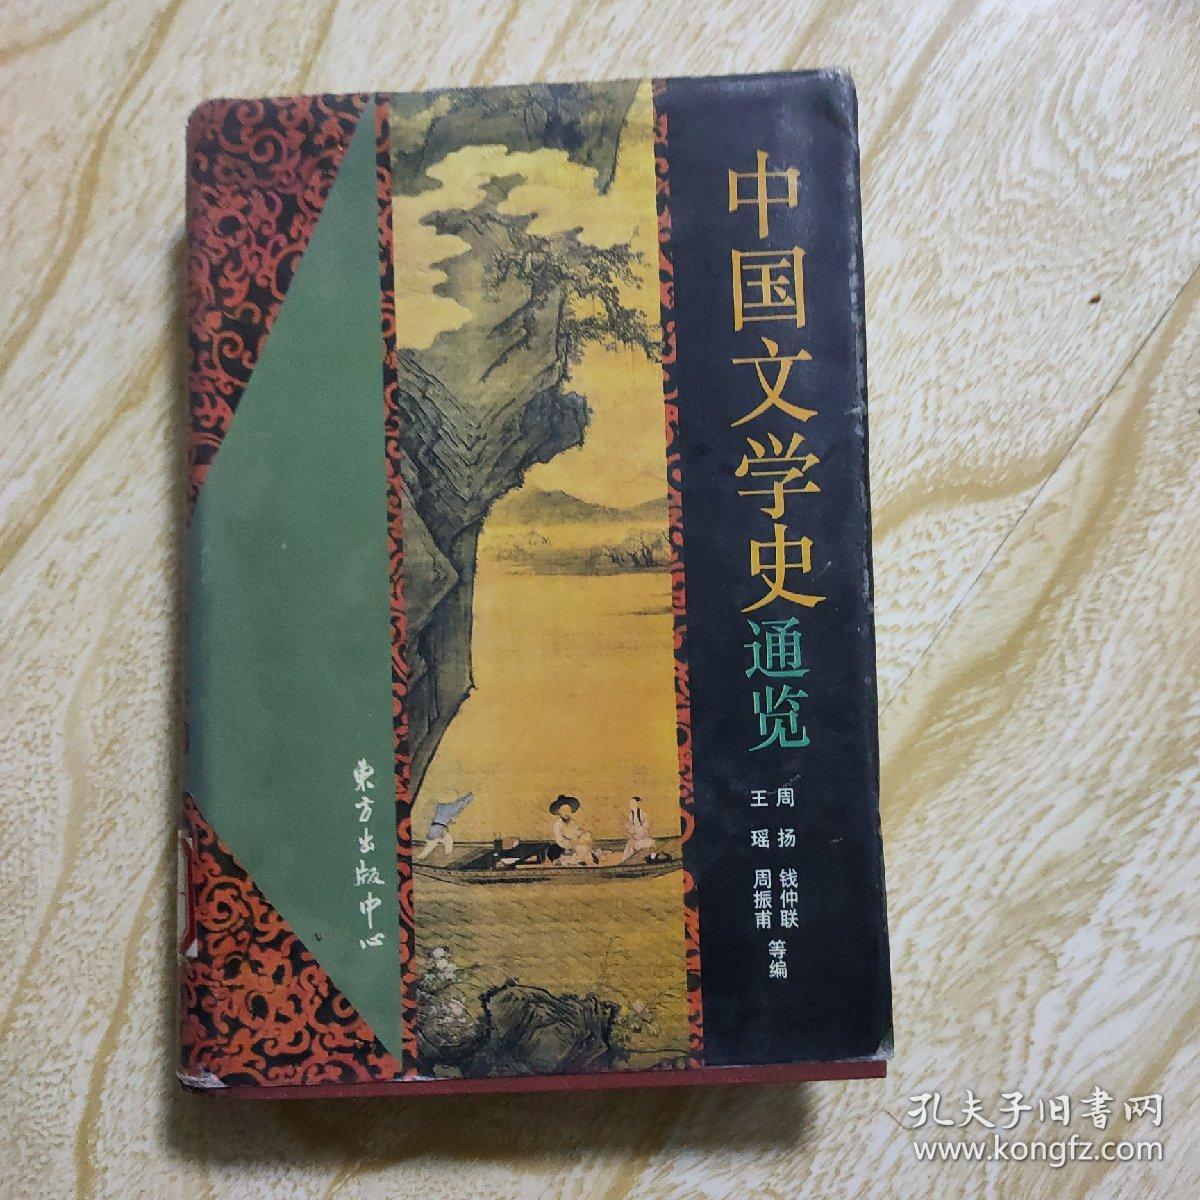 中国文学史通览